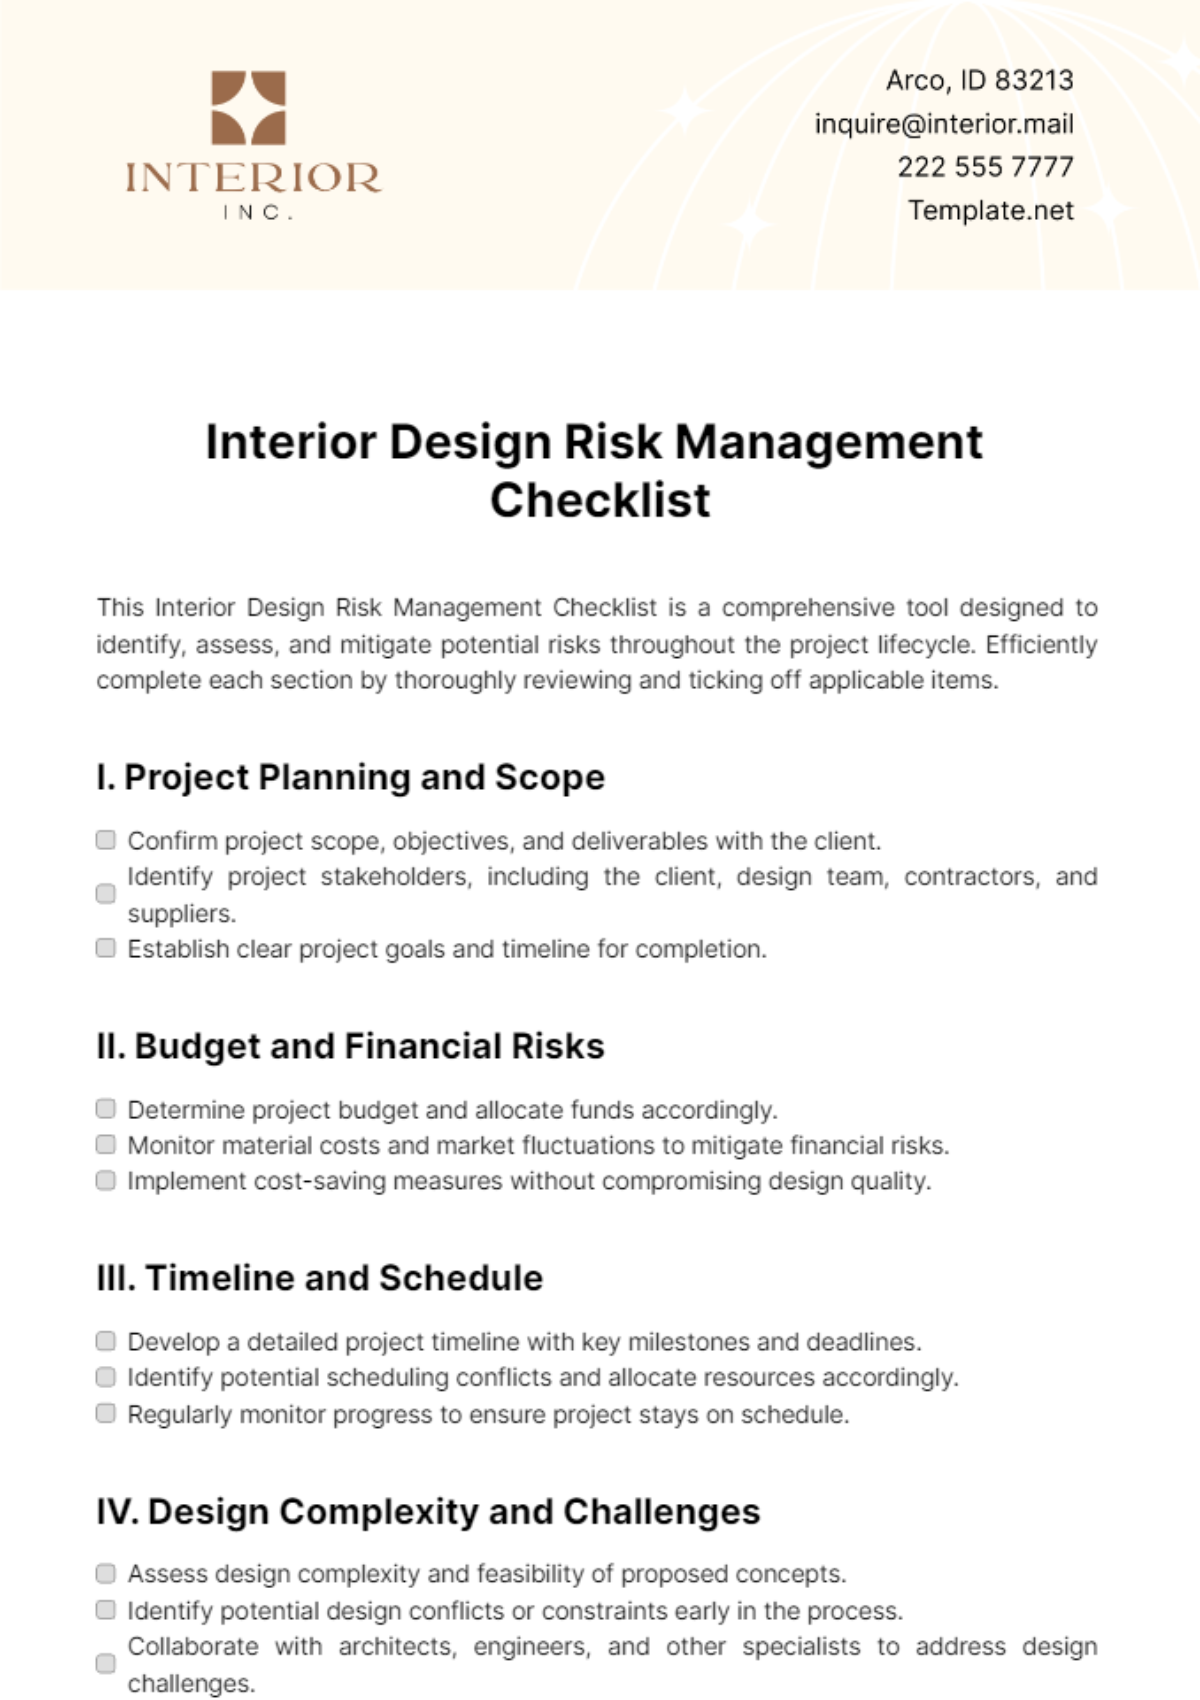 Interior Design Risk Management Checklist Template